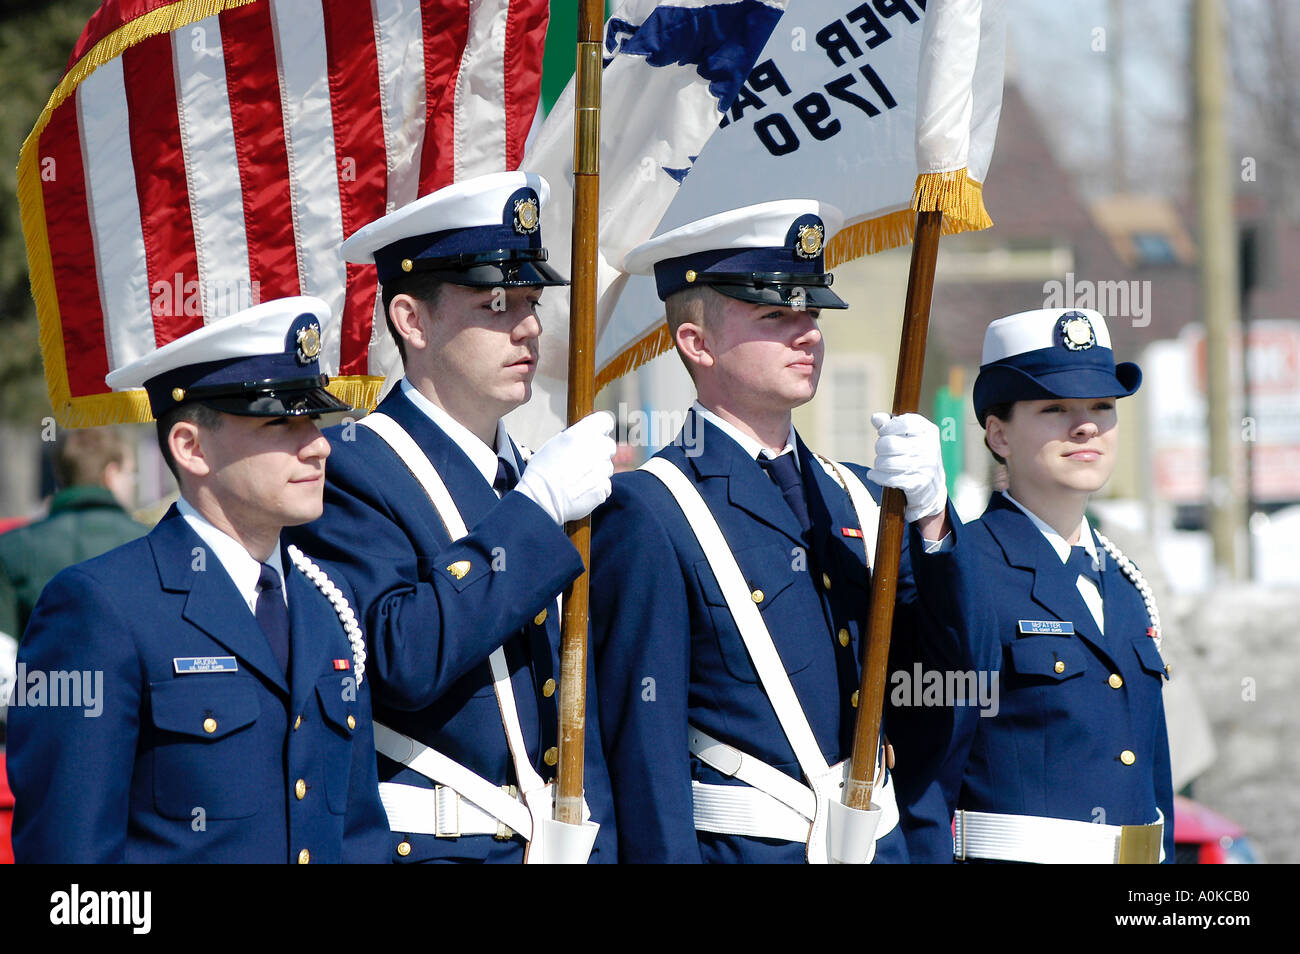 United States Air Force sur la garde d'honneur des Marches en parade Banque D'Images